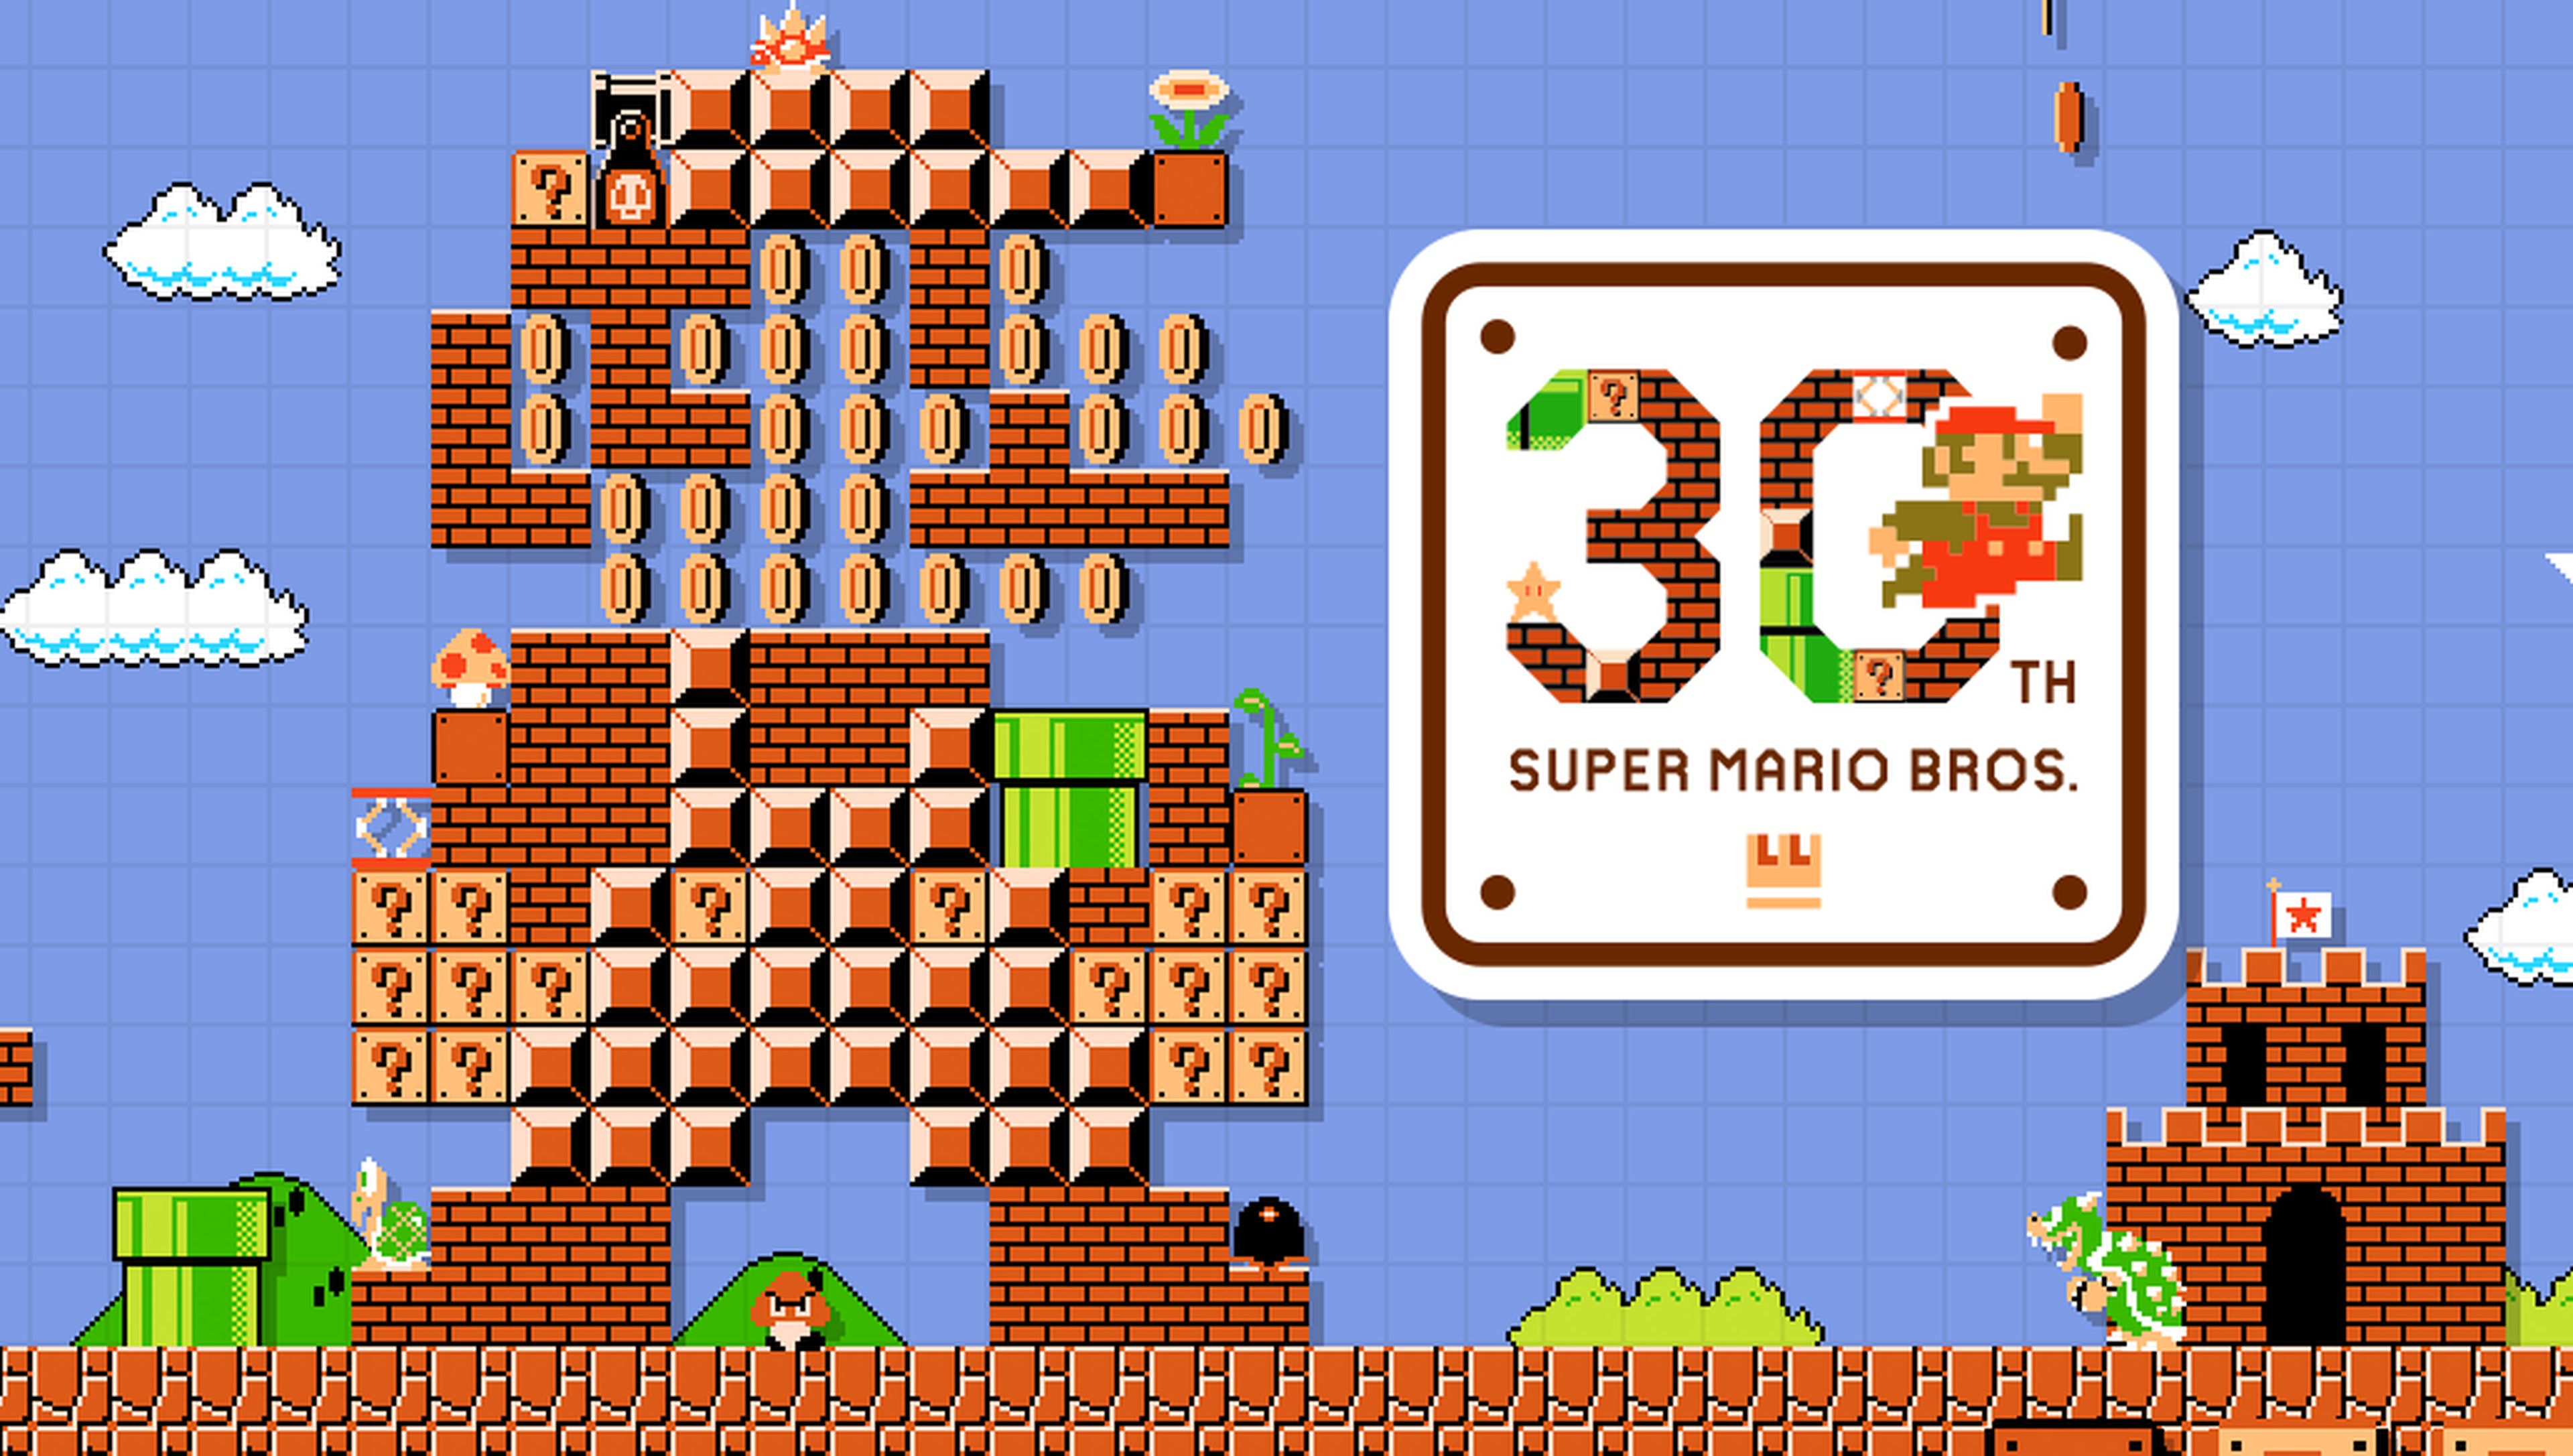 Super Mario cumple 30 años, 30 cosas que no sabías sobre él